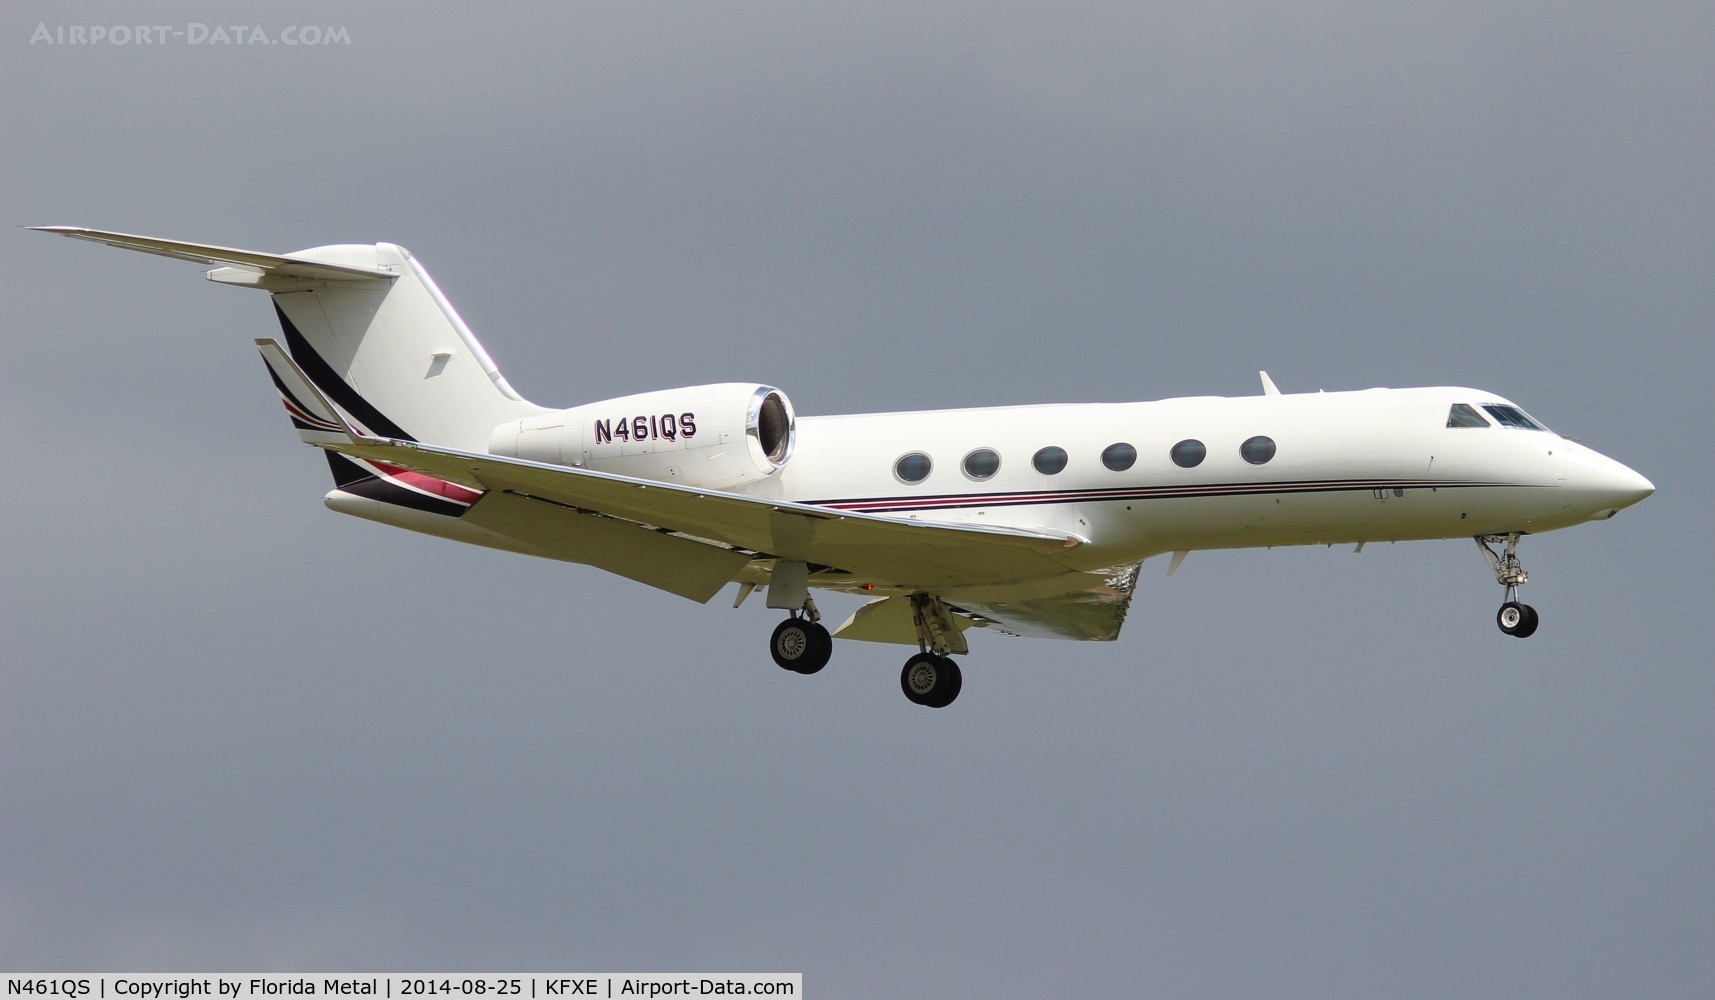 N461QS, 2008 Gulfstream Aerospace GIV-X (G450) C/N 4125, FXE 2014 O.F.A